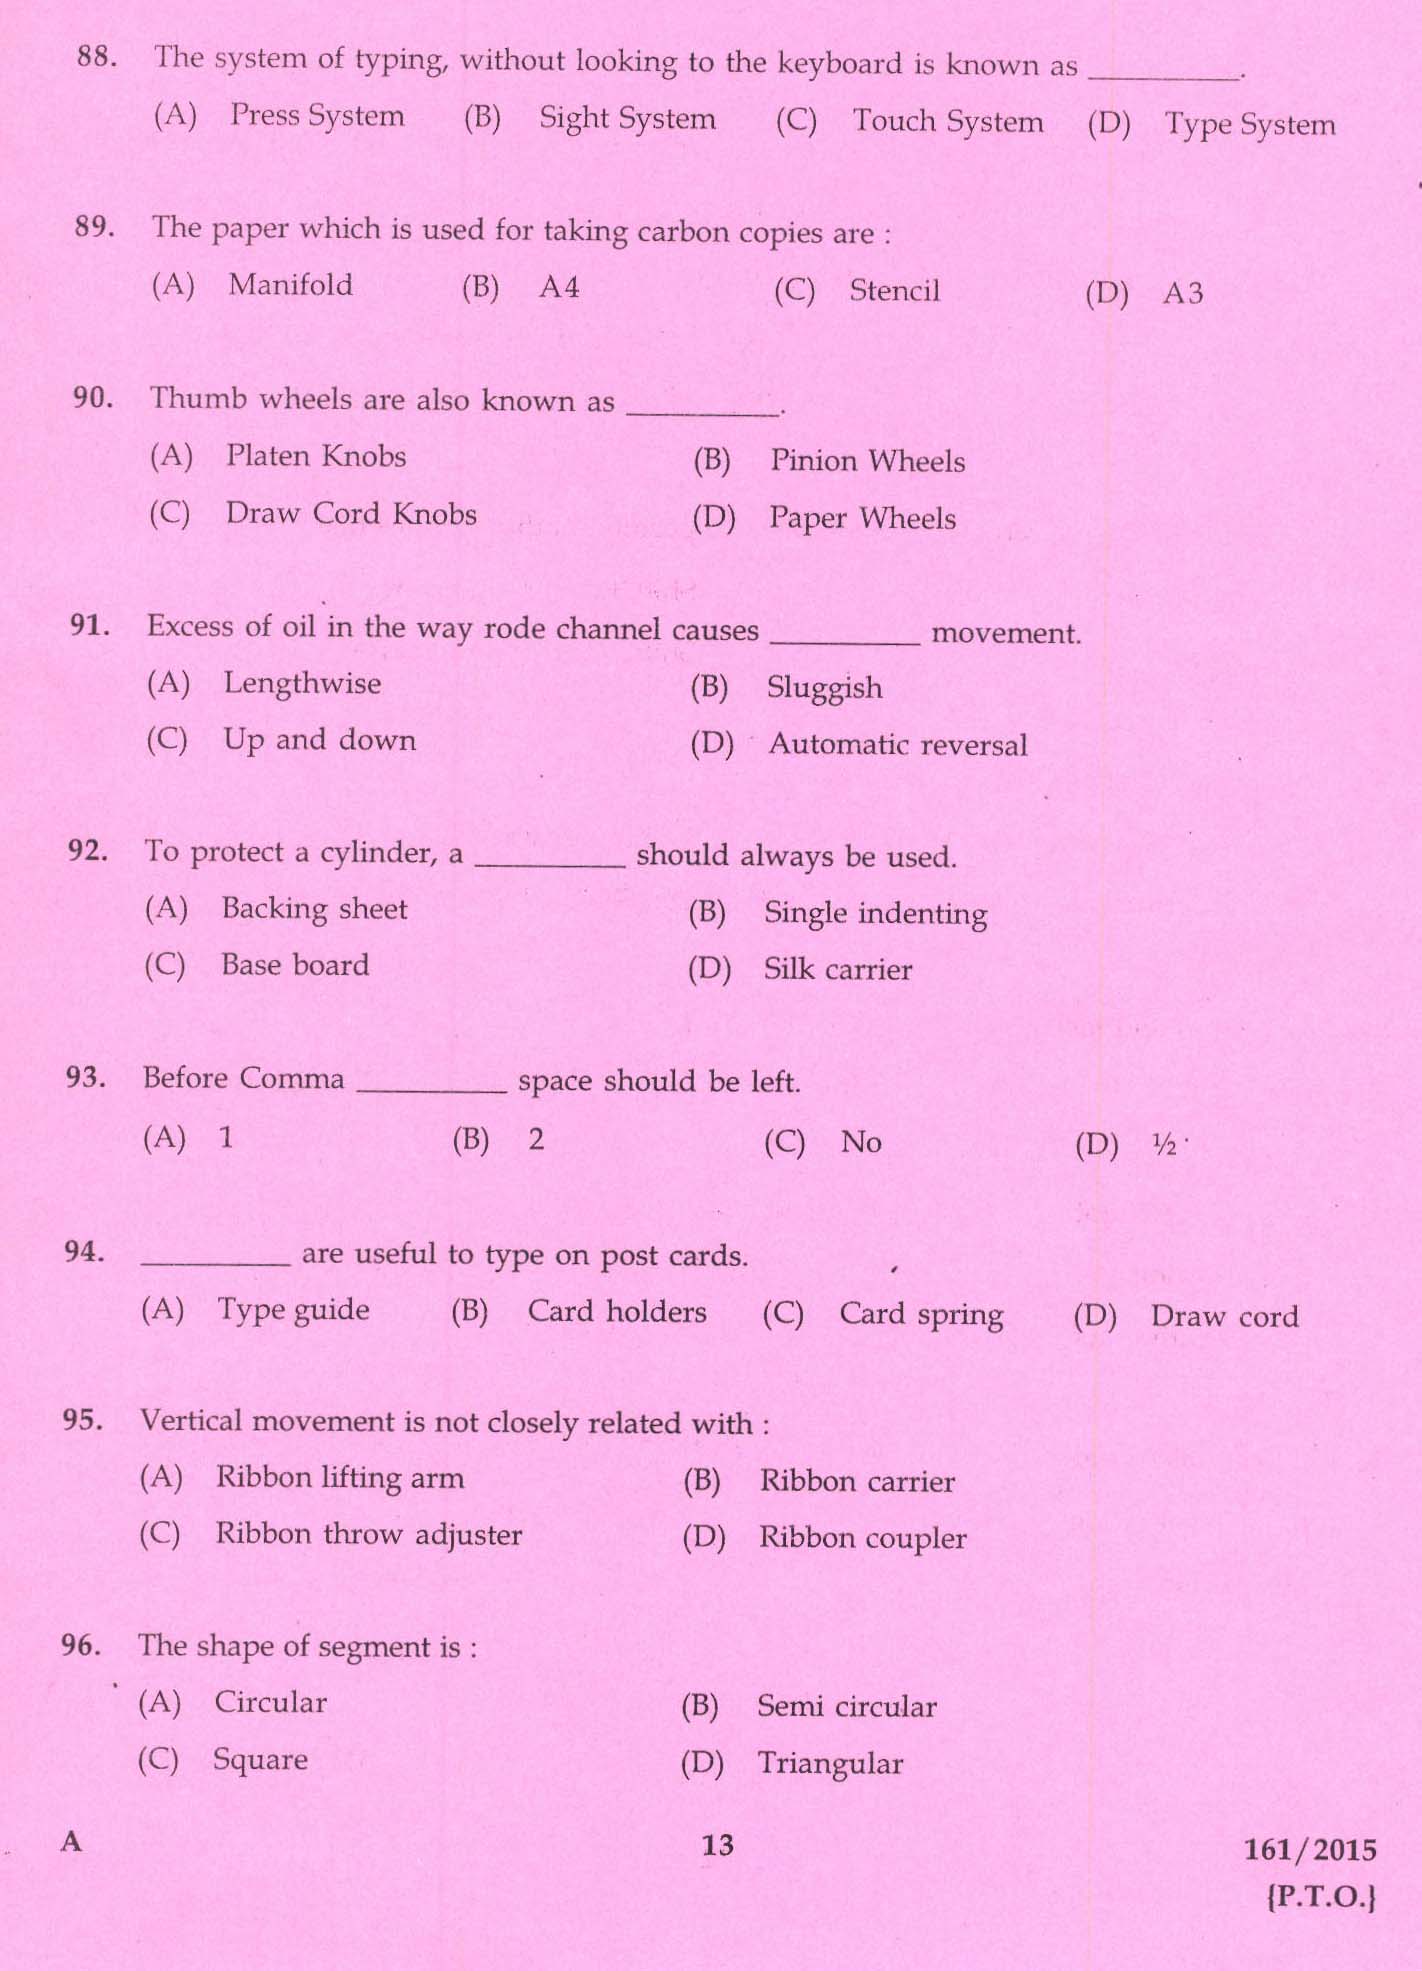 Kerala PSC Stenographer Grade IV Exam 2015 Question Paper Code 1612015 11